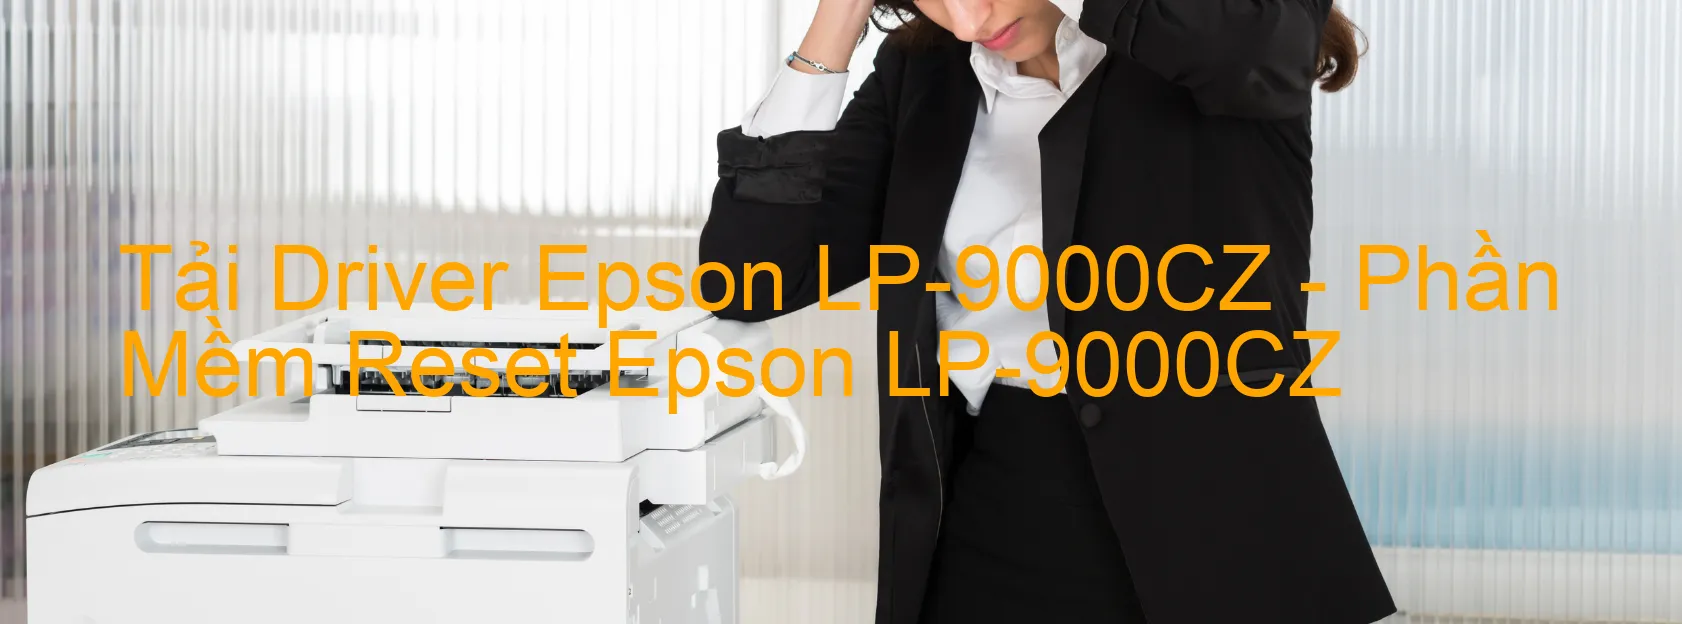 Driver Epson LP-9000CZ, Phần Mềm Reset Epson LP-9000CZ